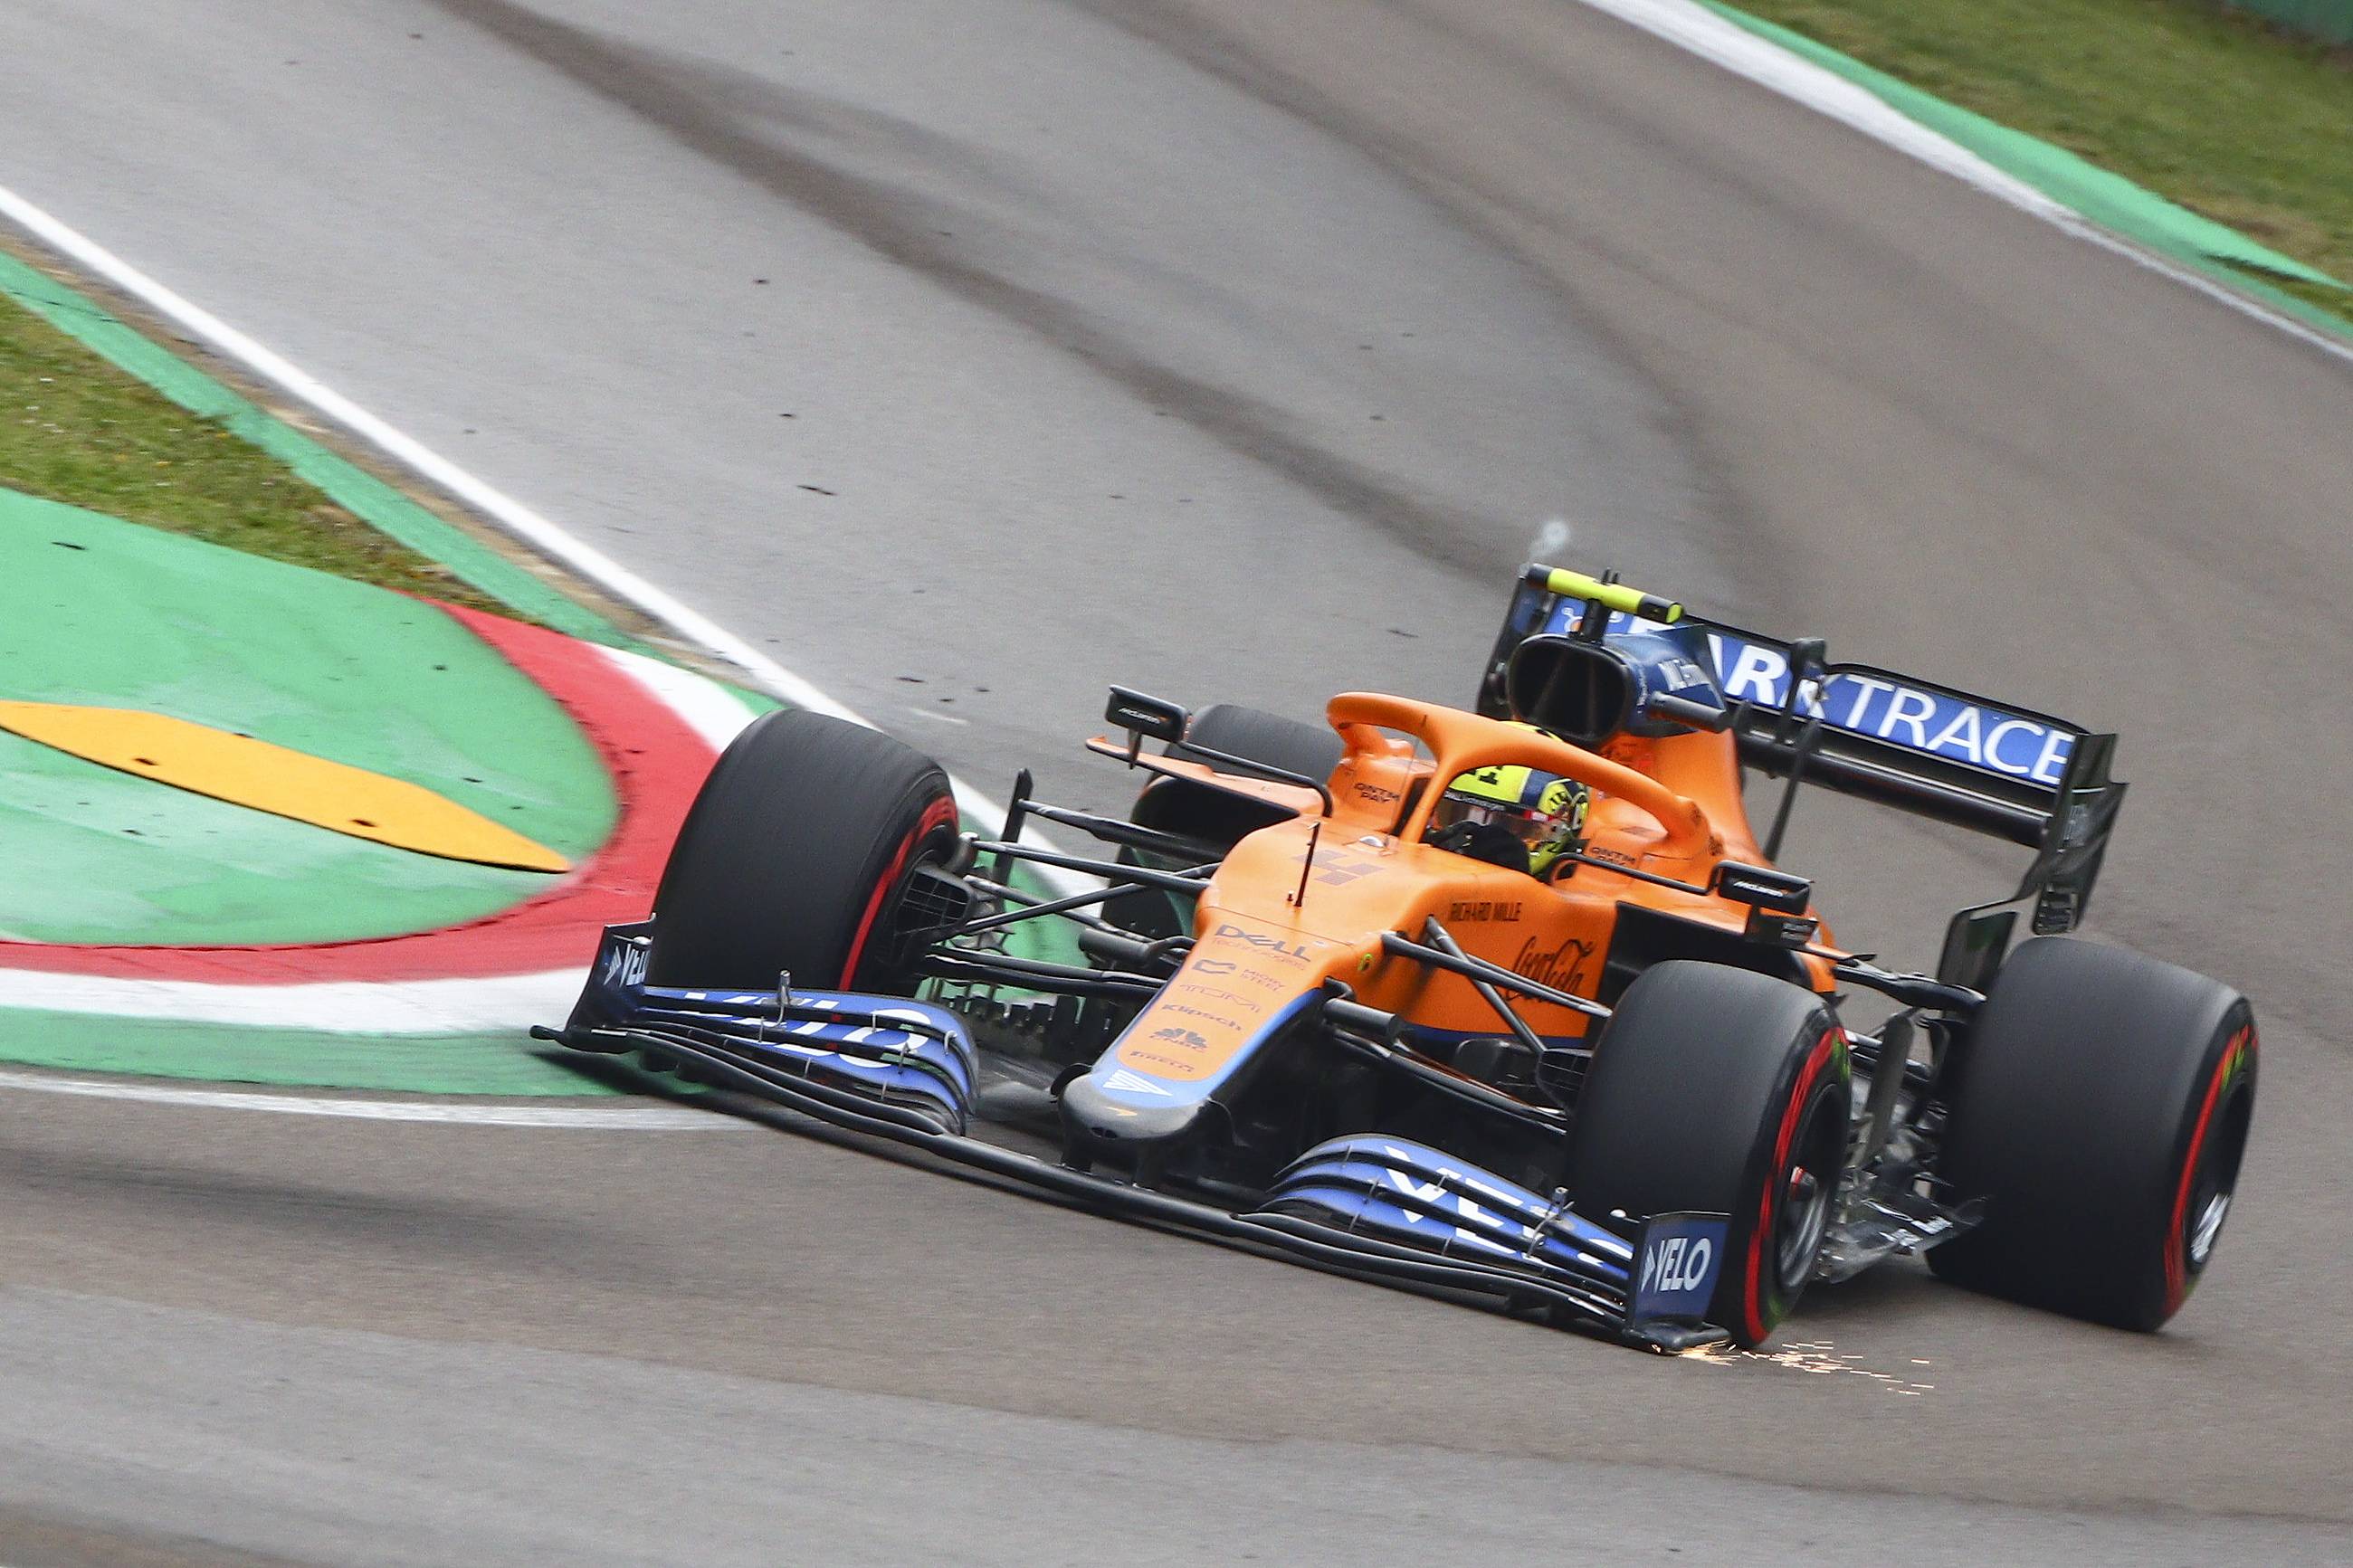 4月18日,迈凯伦车队英国车手诺里斯驾驶赛车在比赛中.